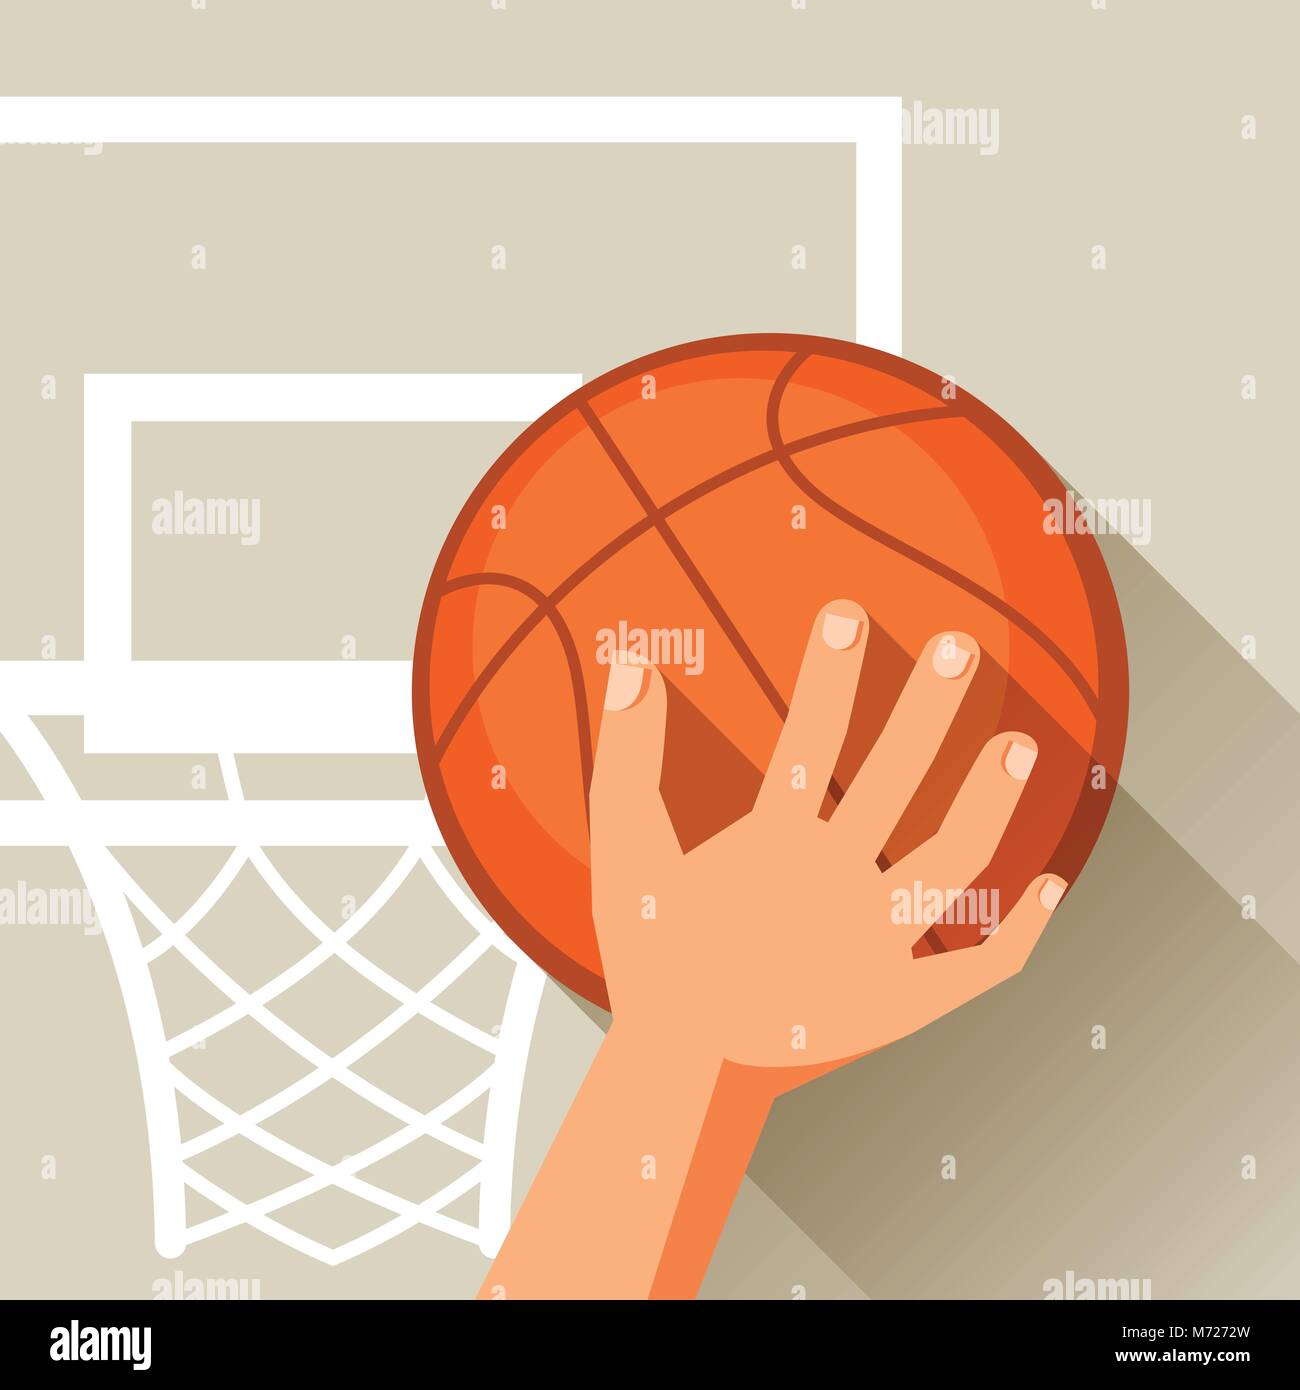 Illustrazione Sportiva Tiro a mano basket ball attraverso hoop Illustrazione Vettoriale